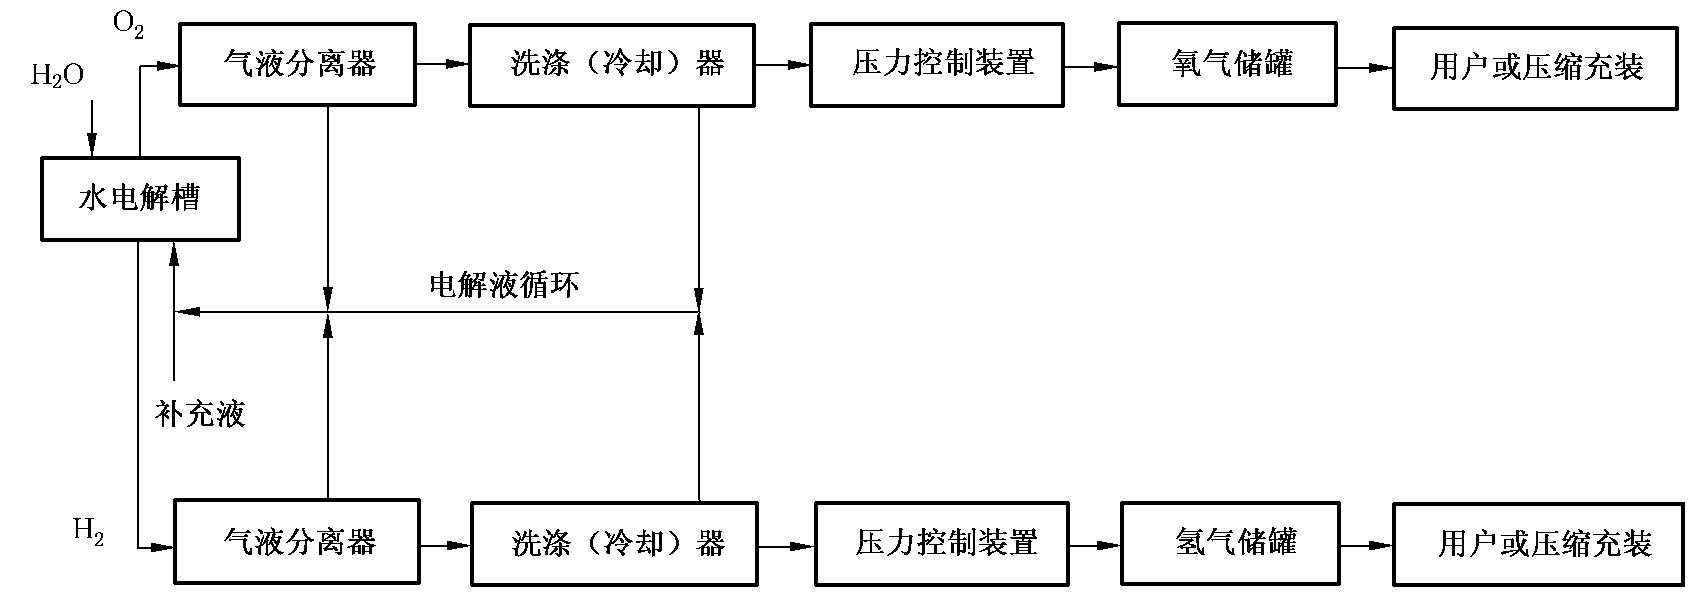 图 1 水电解制氢典型系统框图